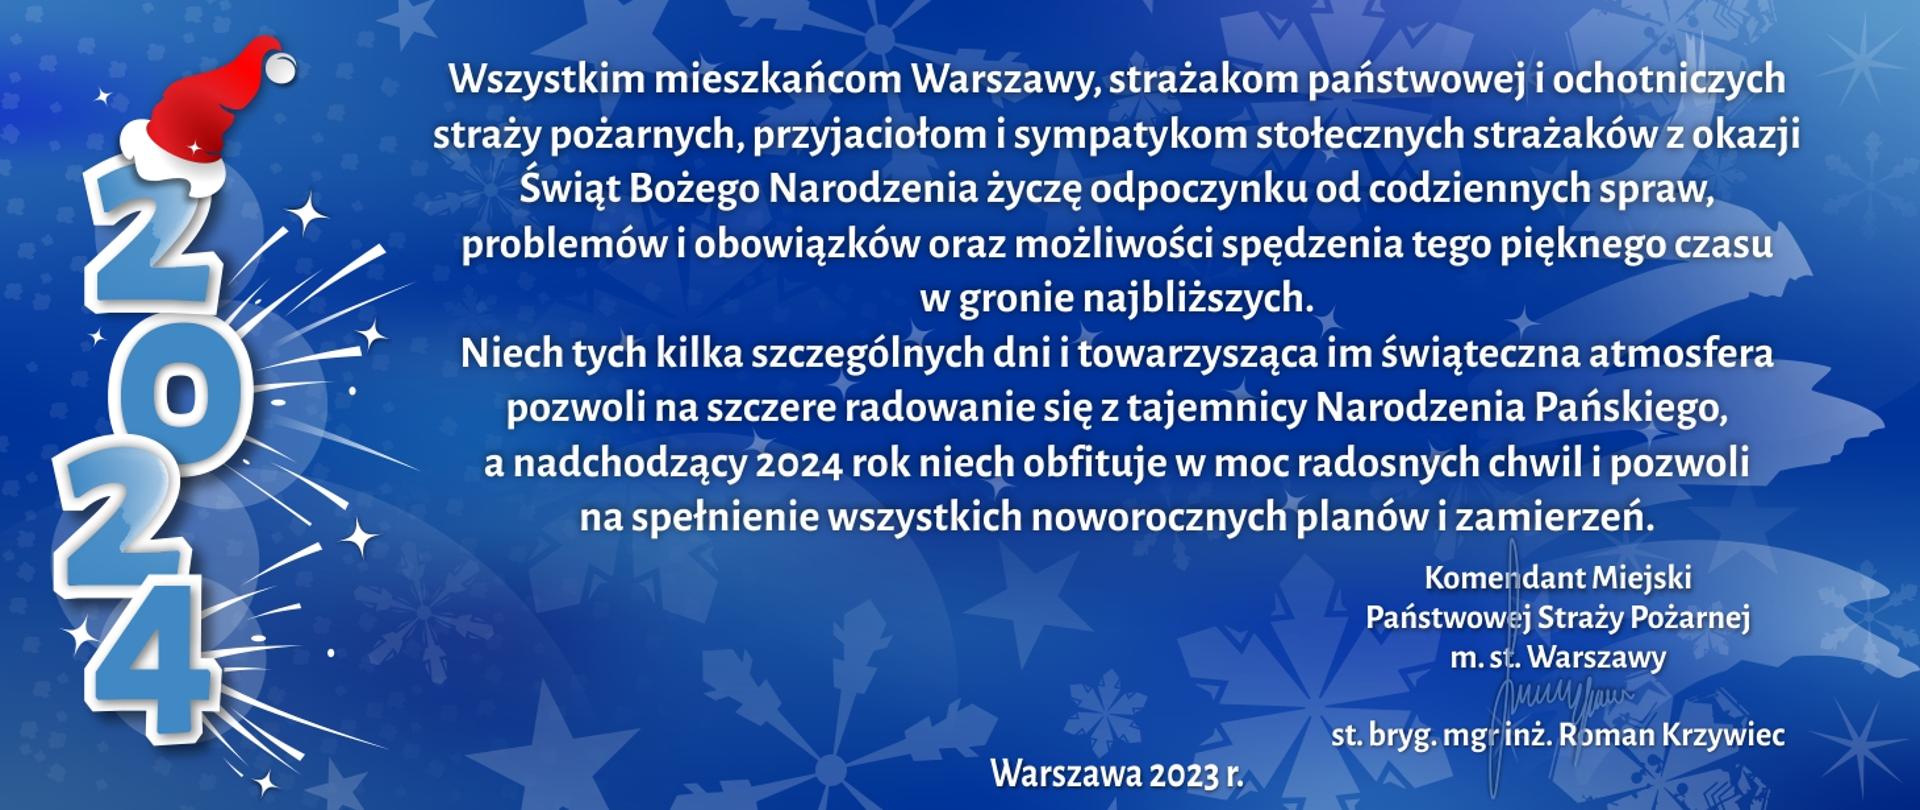 Wszystkim mieszkańcom Warszawy, strażakom państwowej
i ochotniczych straży pożarnych, przyjaciołom i sympatykom
stołecznych strażaków z okazji Świąt Bożego Narodzenia życzę
odpoczynku od codziennych spraw, problemów i obowiązków
oraz możliwości spędzenia tego pięknego czasu w gronie najbliższych.
Niech tych kilka szczególnych dni i towarzysząca im świąteczna
atmosfera pozwoli na szczere radowanie się z tajemnicy
Narodzenia Pańskiego, a nadchodzący 2024 rok niech obfituje
w moc radosnych chwil i pozwoli na spełnienie wszystkich
noworocznych planów i zamierzeń.
Ze strażackim pozdrowieniem
Komendant Miejski
Państwowej Straży Pożarnej
m. st. Warszawy
st. bryg. mgr inż. Roman Krzywiec
